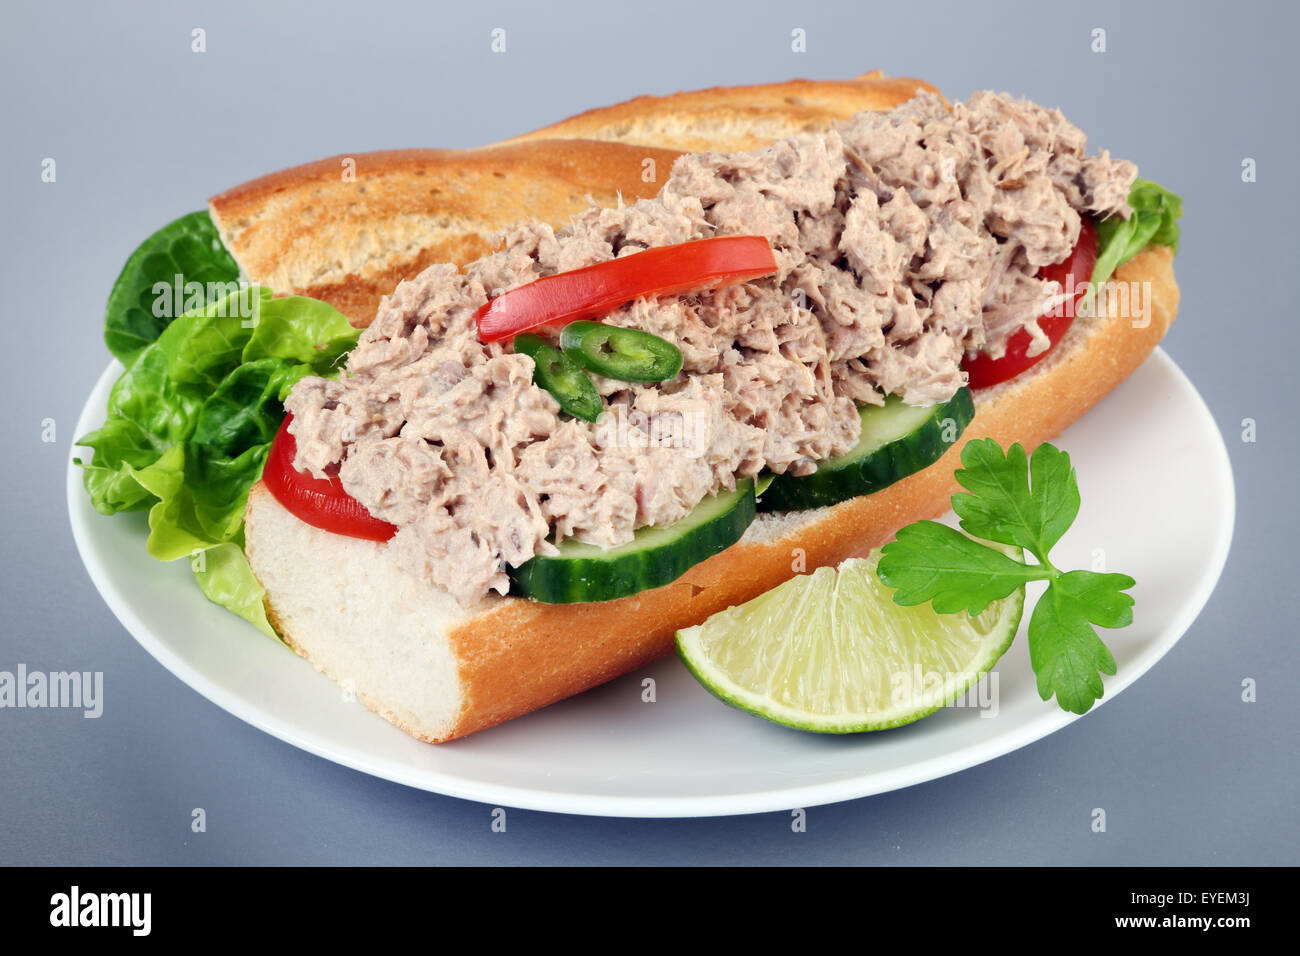 Sándwich de ensalada de atún en pan francés baguette Foto de stock